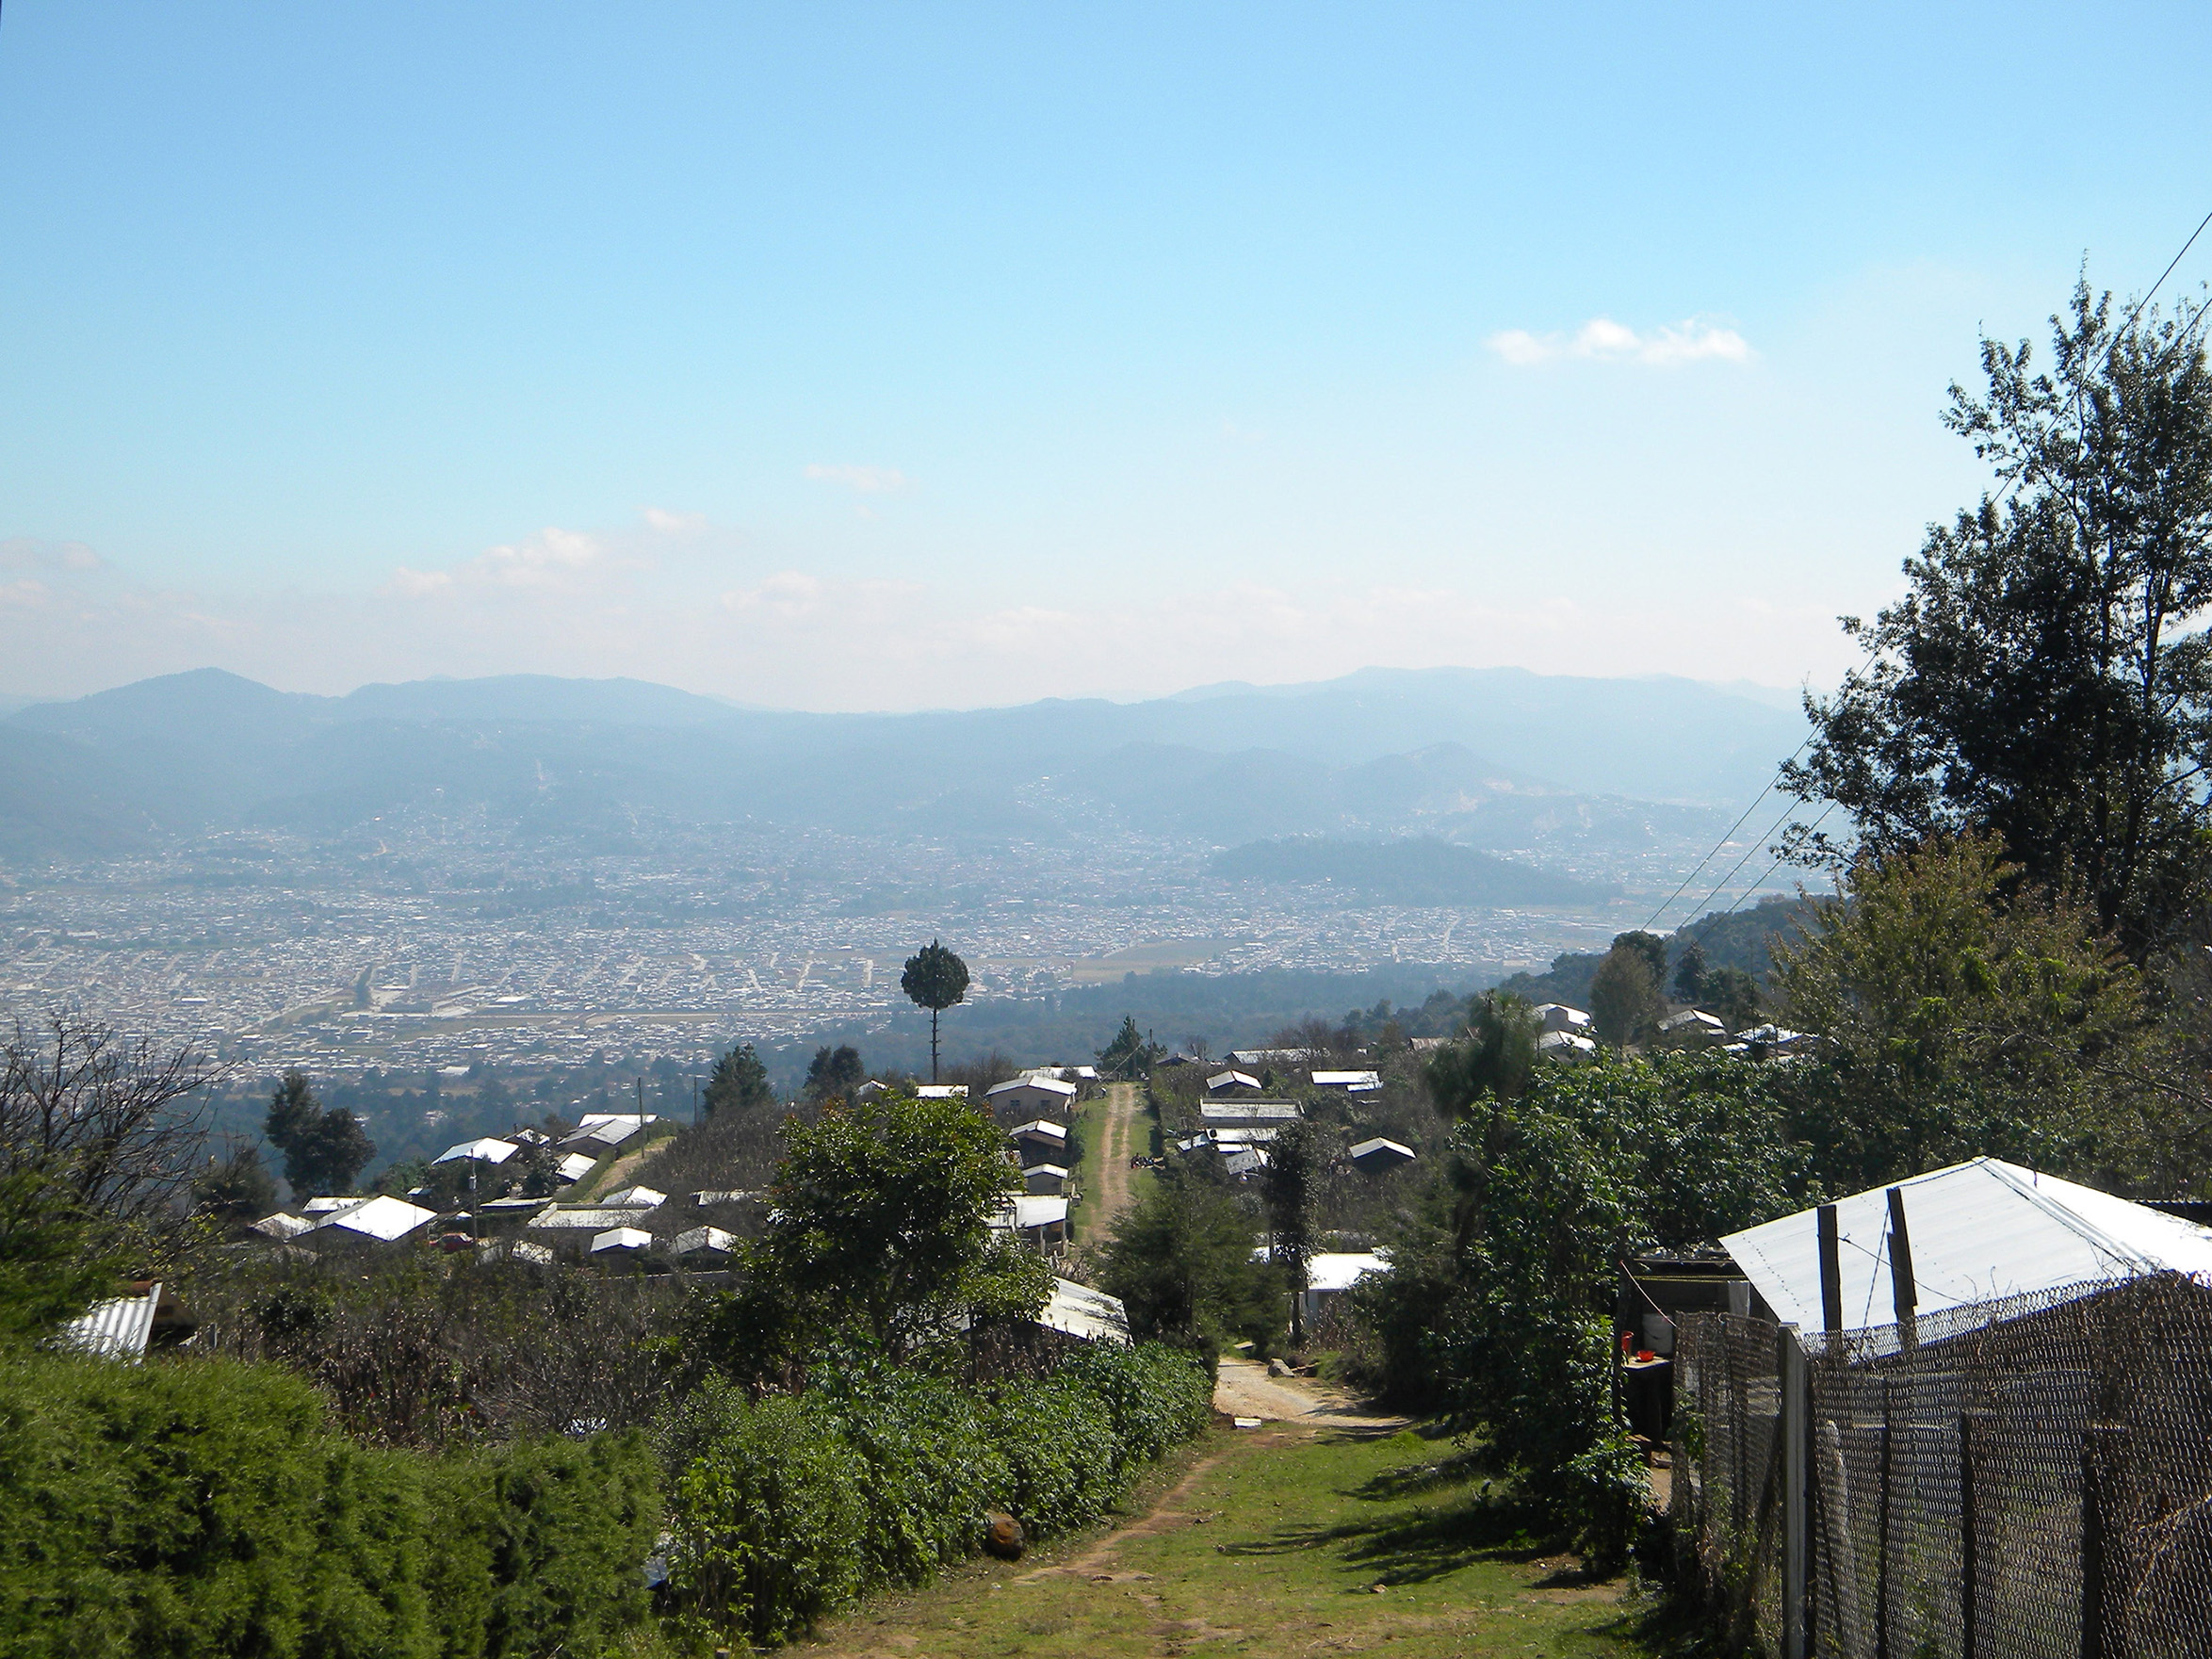 El crecimiento de la ciudad de San Cristóbal de Las Casas y su periferia rural. Impactos negativos y oportunidades